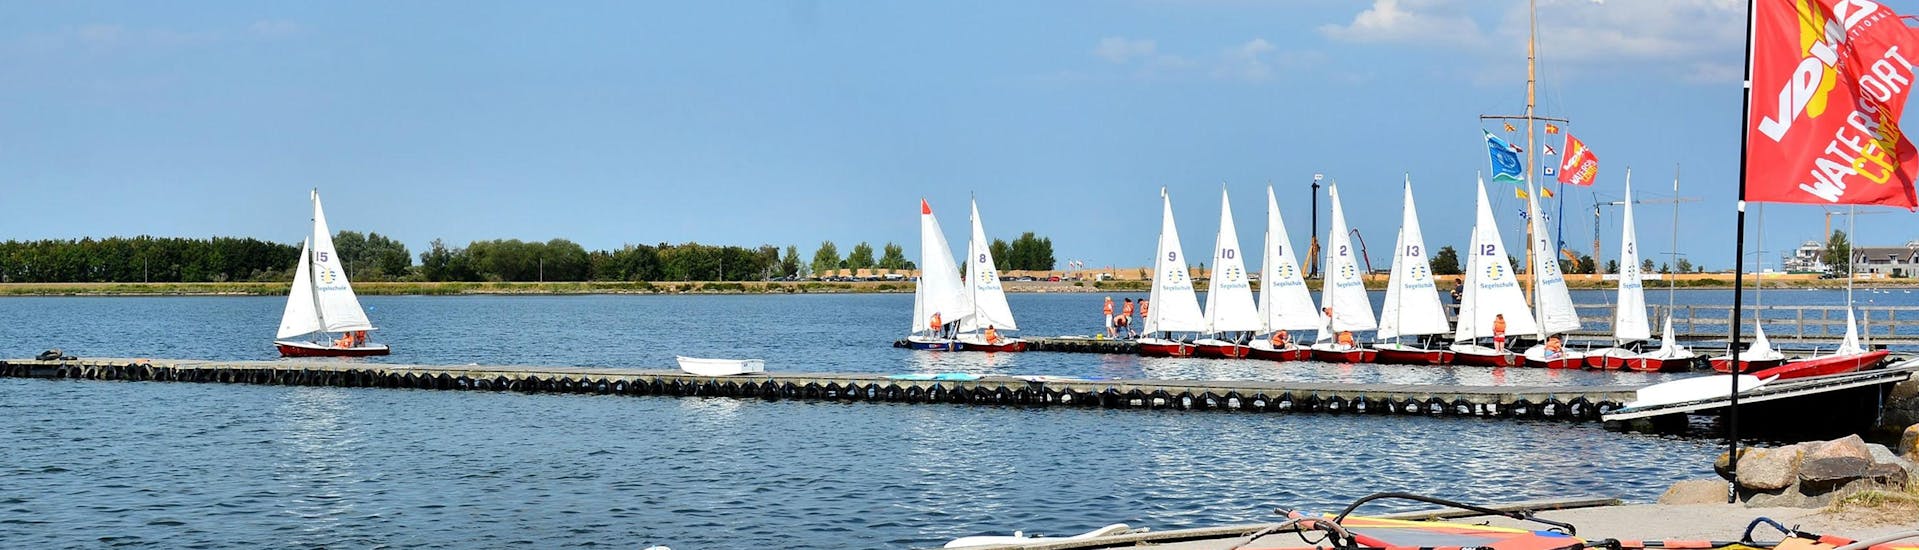 Ein Blick auf den See während des Windsurfingkurses "SAC Step Basic" - Heiligenhafen mit dem Wassersportcenter Heiligenhafen.